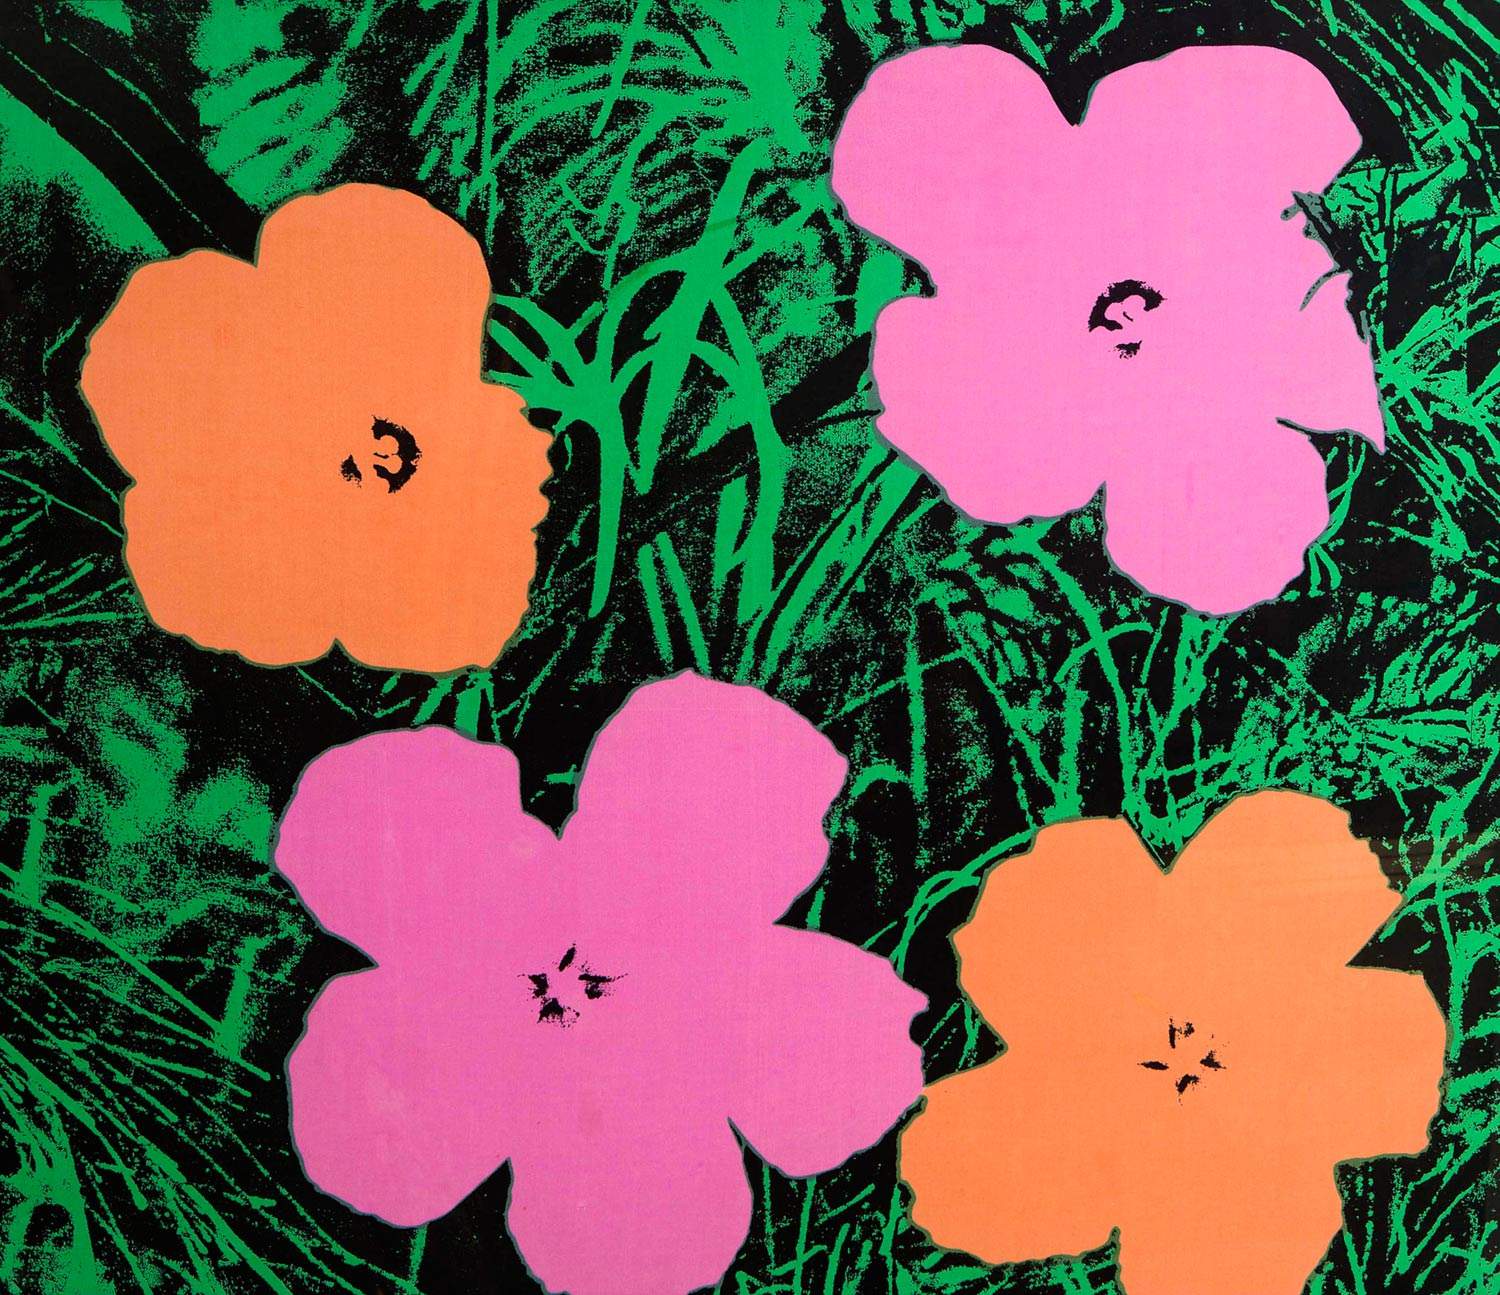 Milano, in autunno una grande mostra su Andy Warhol curata da Bonito Oliva